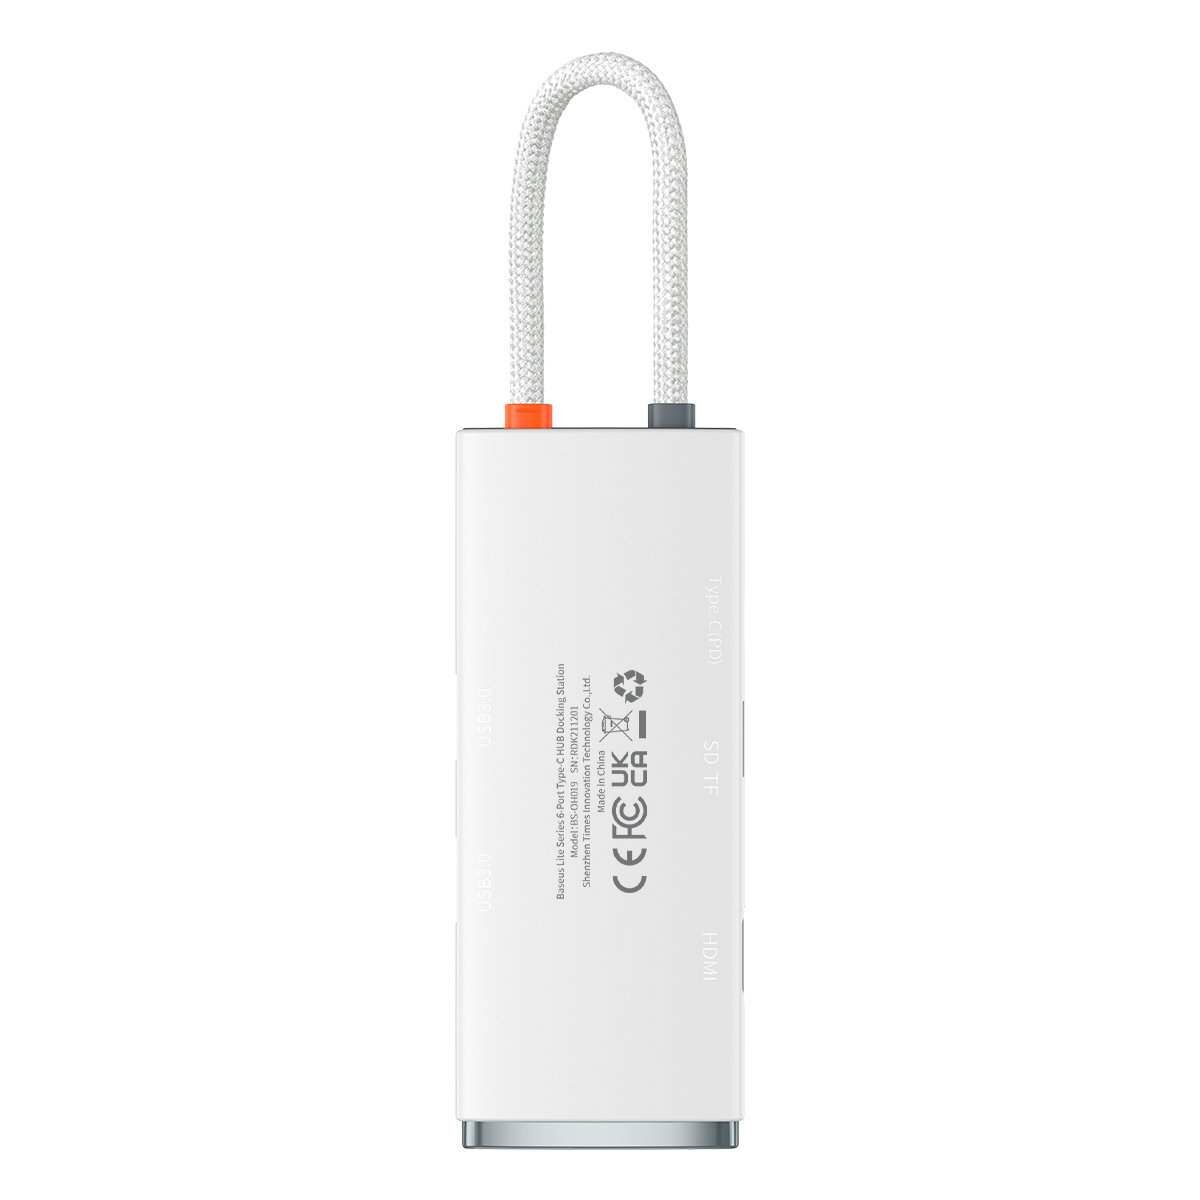 Kép 2/12 - Baseus HUB Lite 6-in-1 adapter (Type-C - 2x USB 3.0 / PD USB-C / HDMI 1.4 / SD/TF), fehér (WKQX050102)